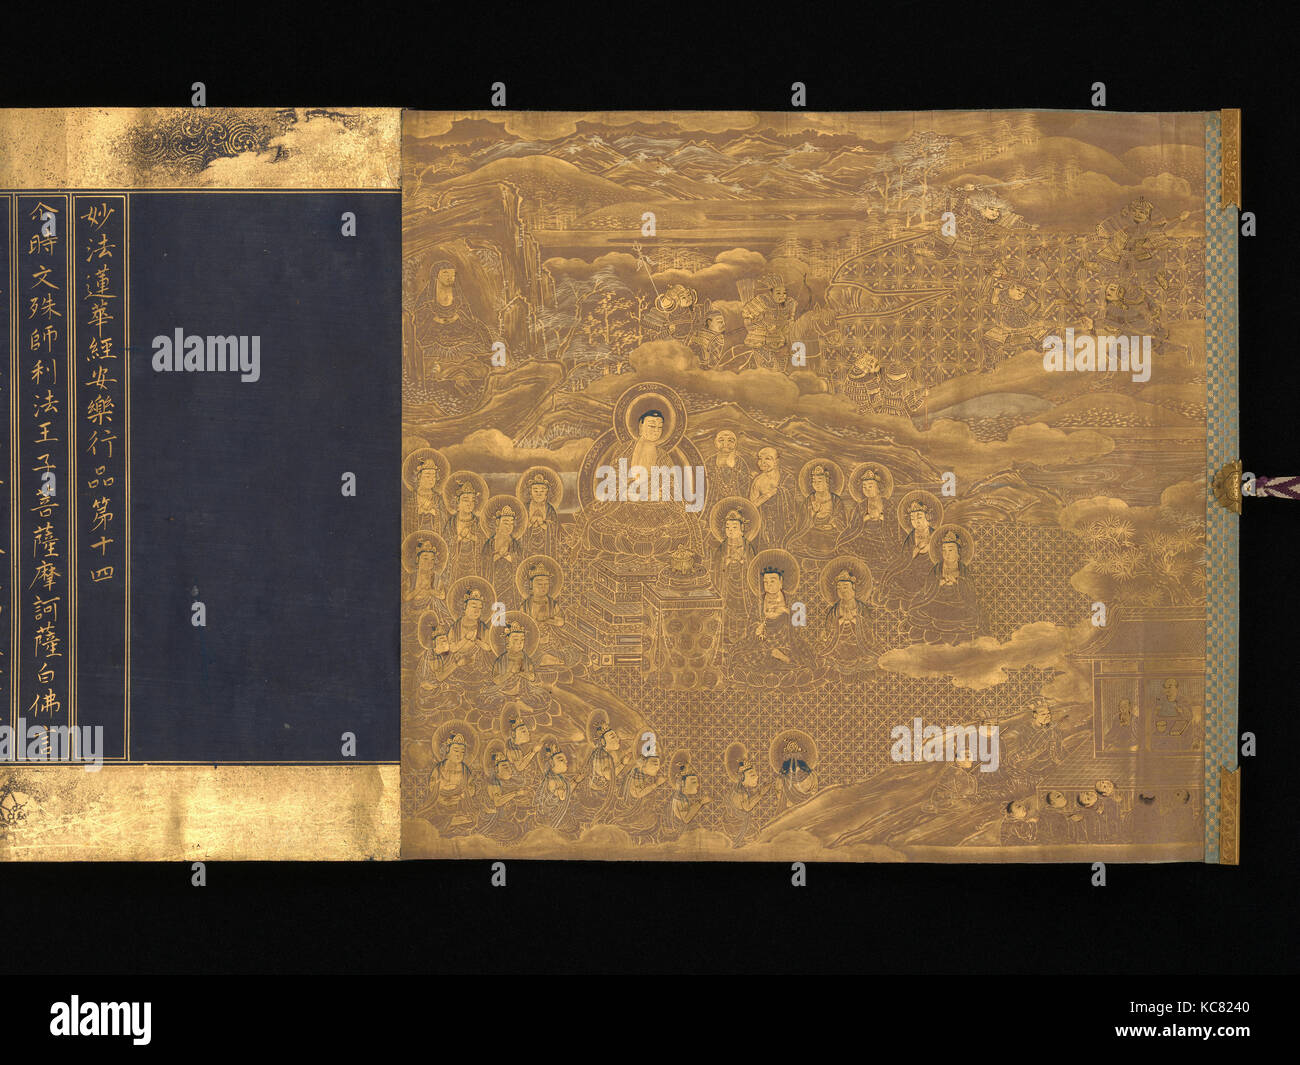 妙法蓮華経, Sutra du Lotus, chapitres 12 et 14, période Edo (1615-1868), ca. 1667, au Japon, deux handscrolls ; or, l'argent sur le teint à l'indigo Banque D'Images